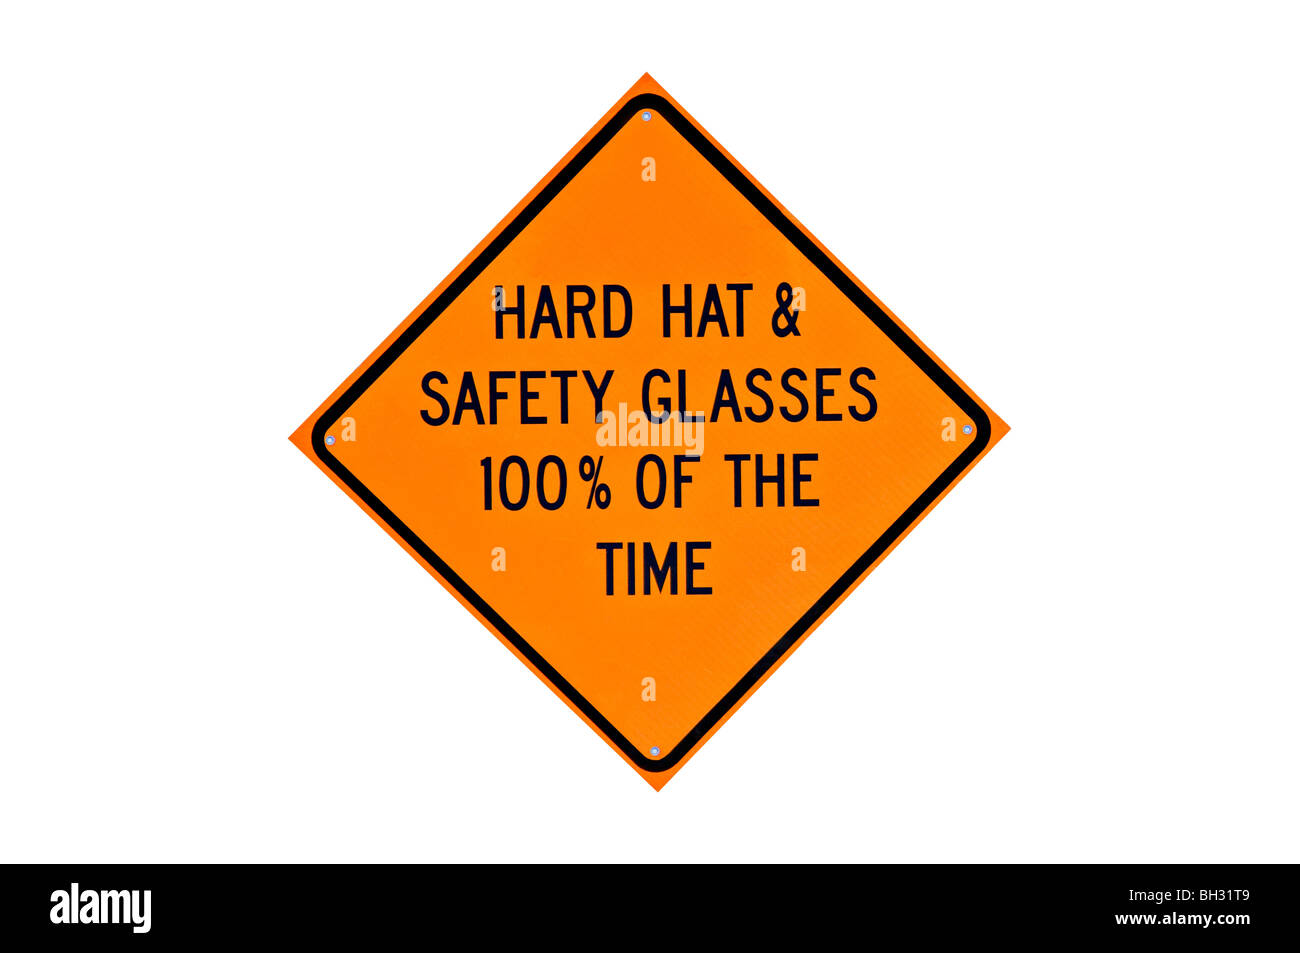 Orange Warning Sign on White Background. Stock Photo